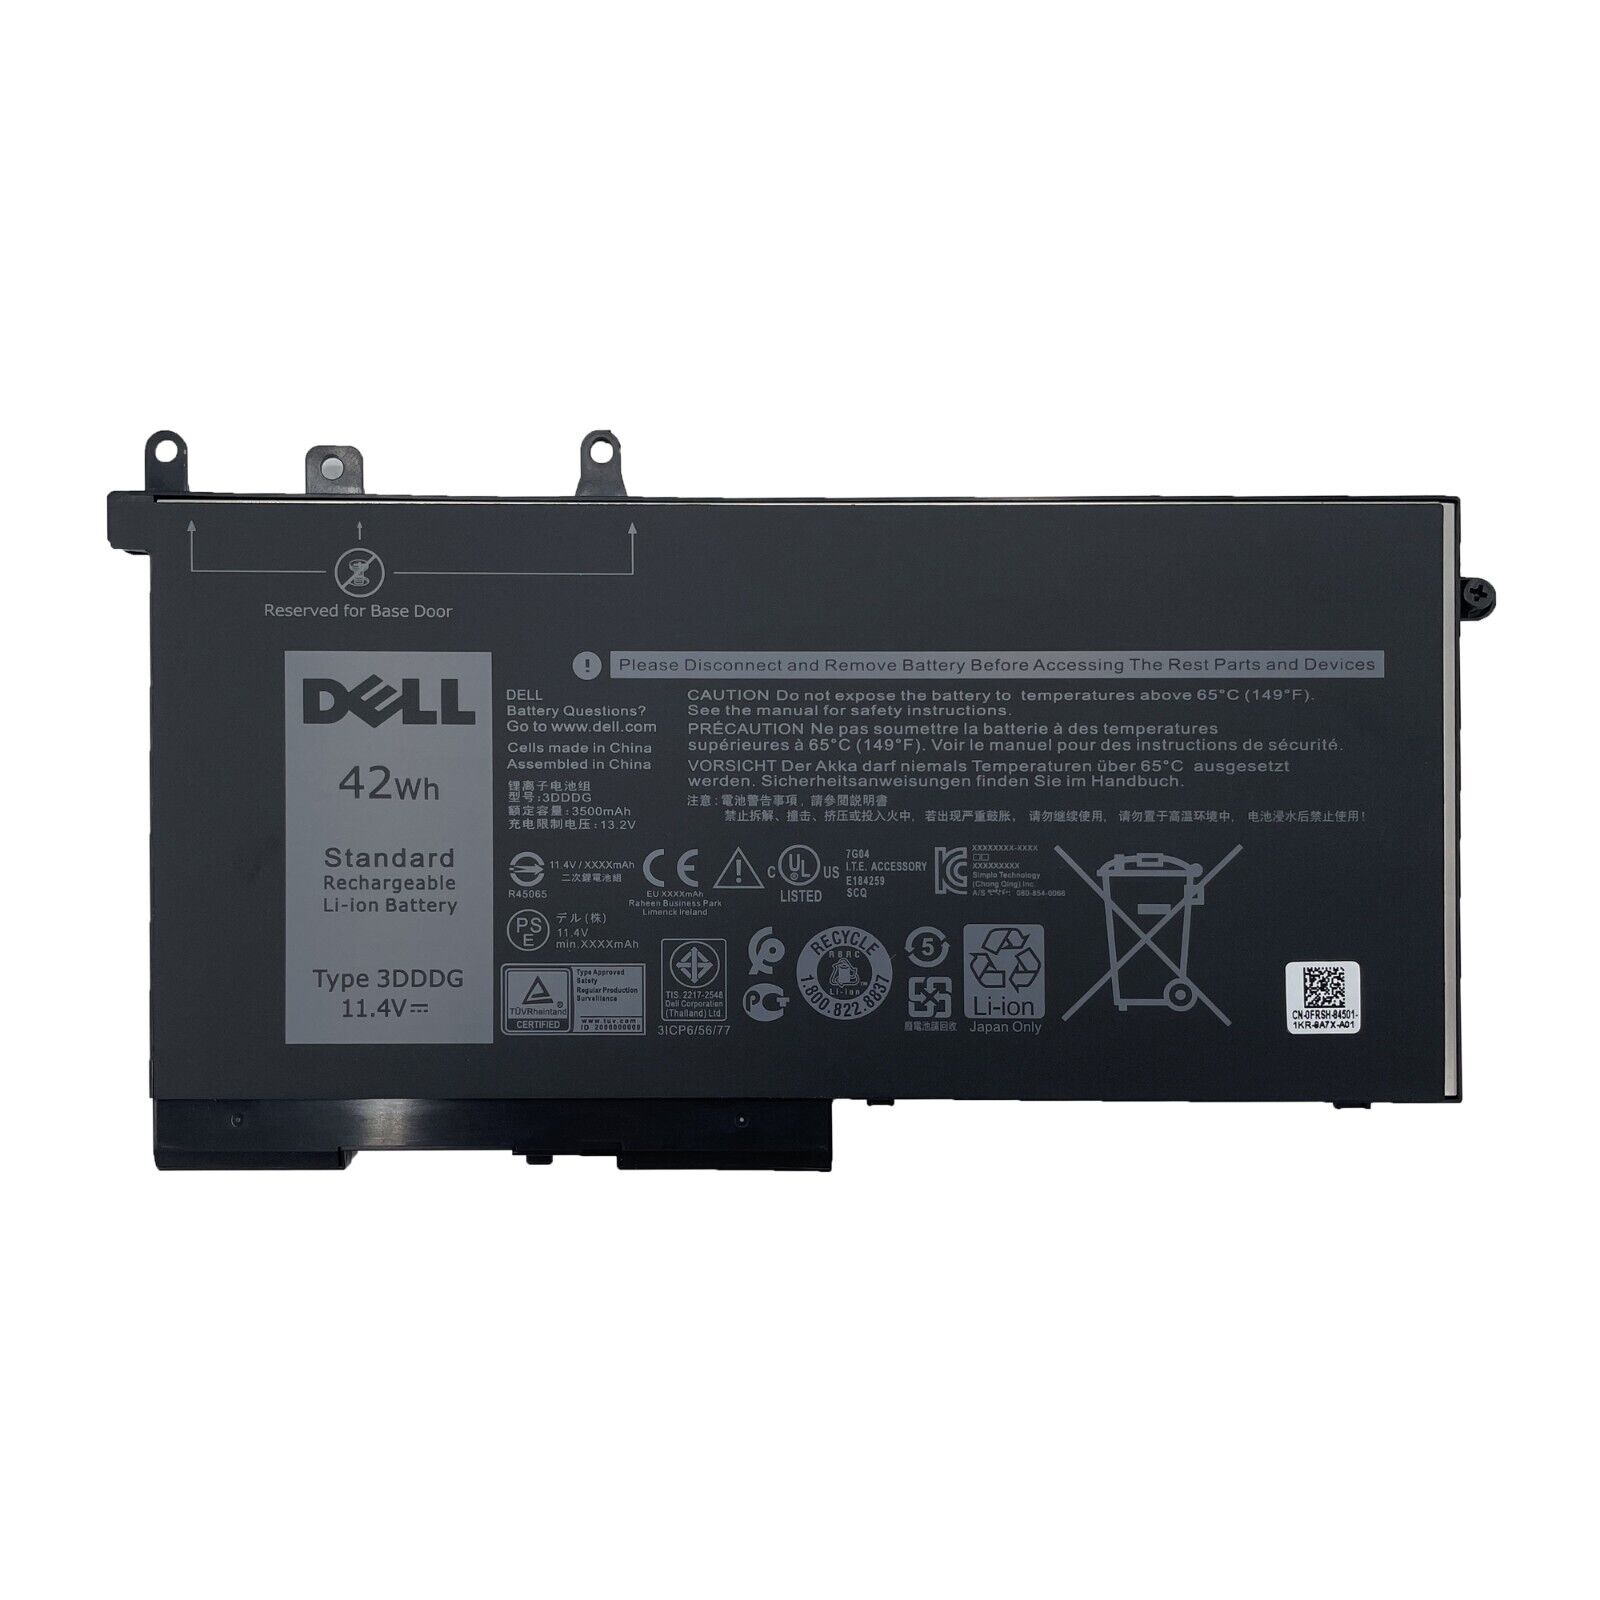 NEW Genuine 42WH 3DDDG Battery For Dell Precision 3520 M3520 3530 M3530 451-BBZP